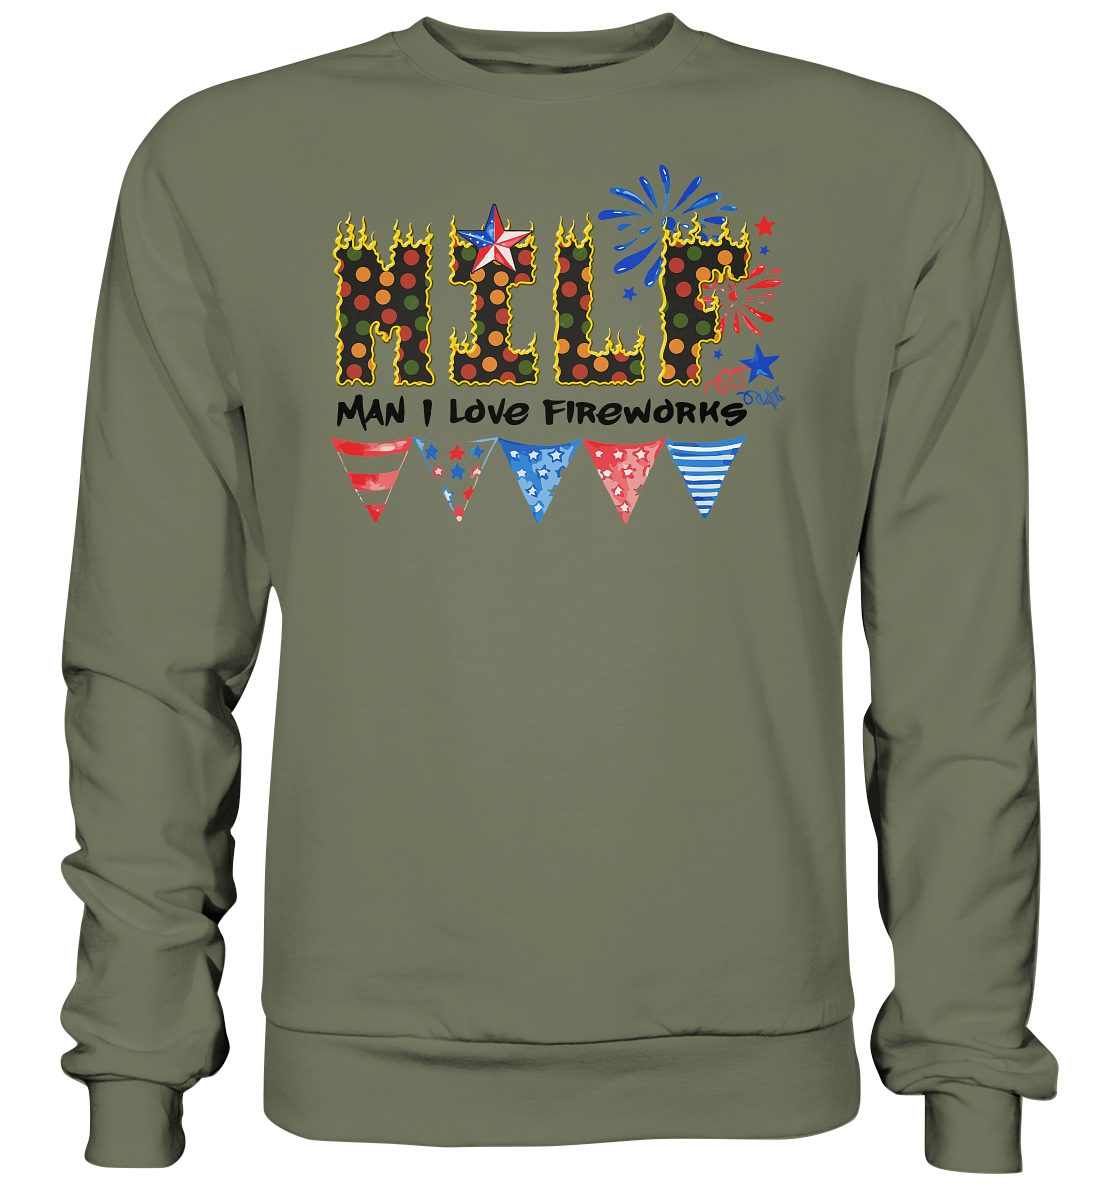 Shirt für jeden Silvesterfan m Man I Love Fireworks , Silvester , Feuerwerk, Lustiges T-Shirt - Premium Sweatshirt